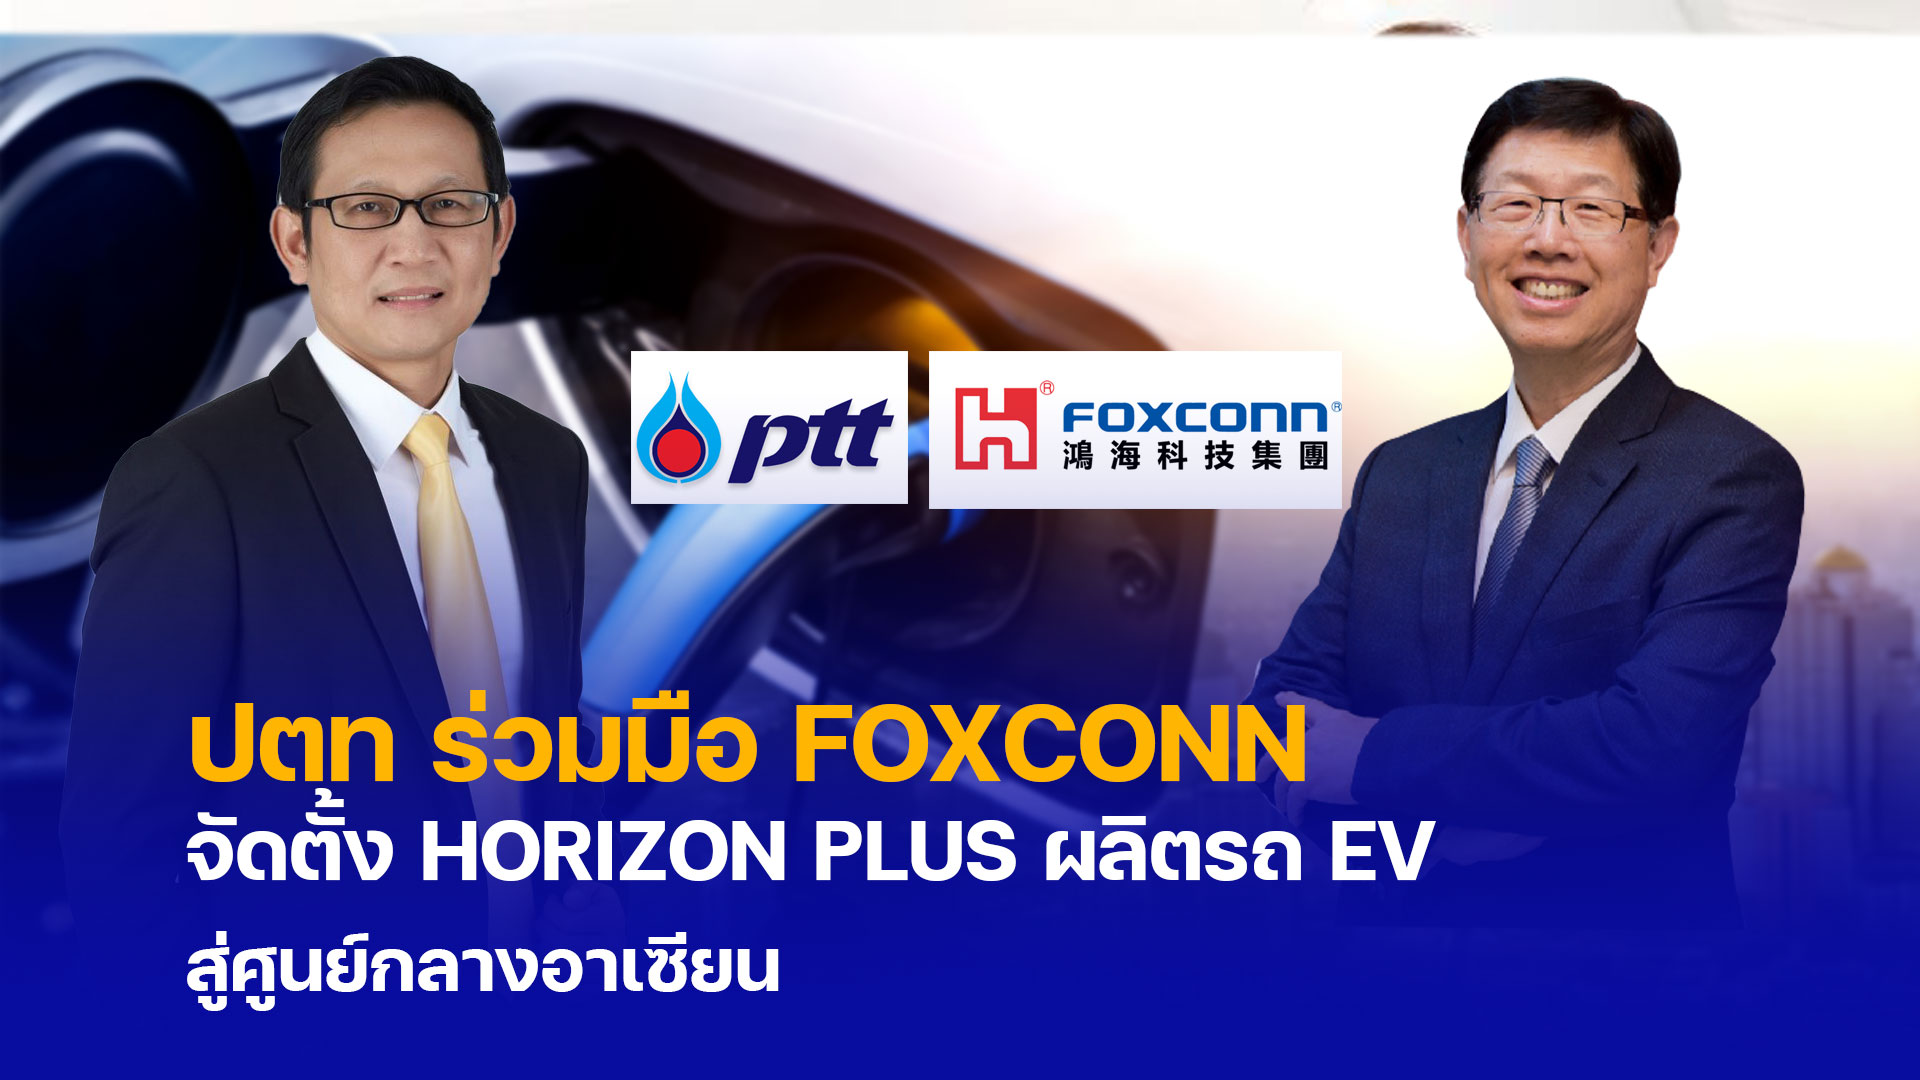 ปตท ร่วมทุน FOXCONN จัดตั้ง HORIZON PLUS ผลิตรถ EV สู่ศูนย์กลางอาเซียน